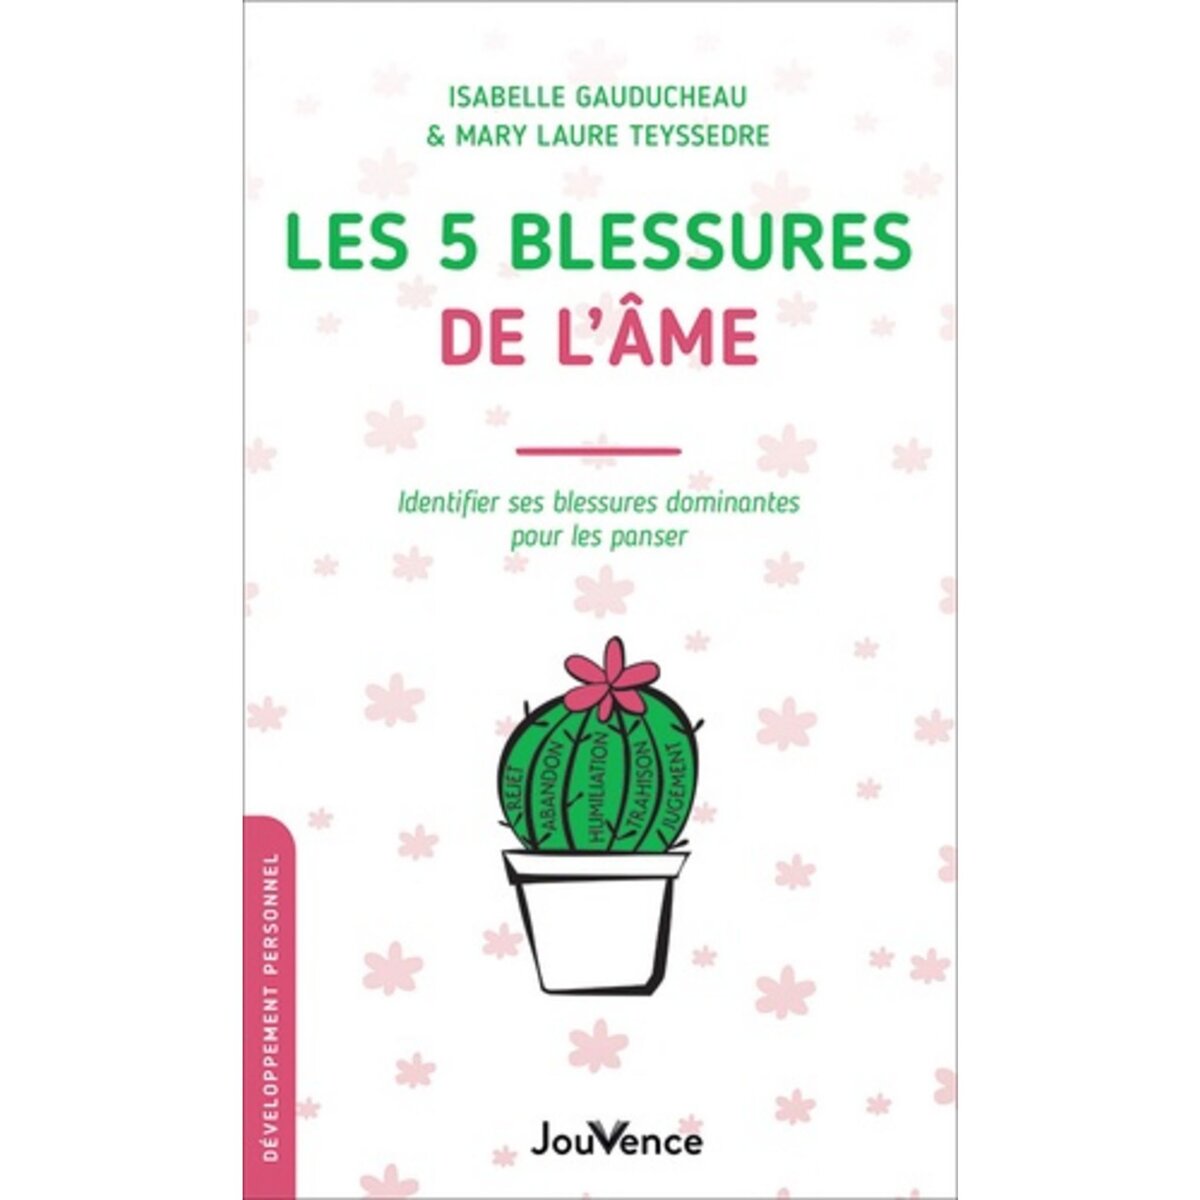  LES 5 BLESSURES DE L'AME. IDENTIFIER SES BLESSURES DOMINANTES POUR LES PANSER, Gauducheau Isabelle